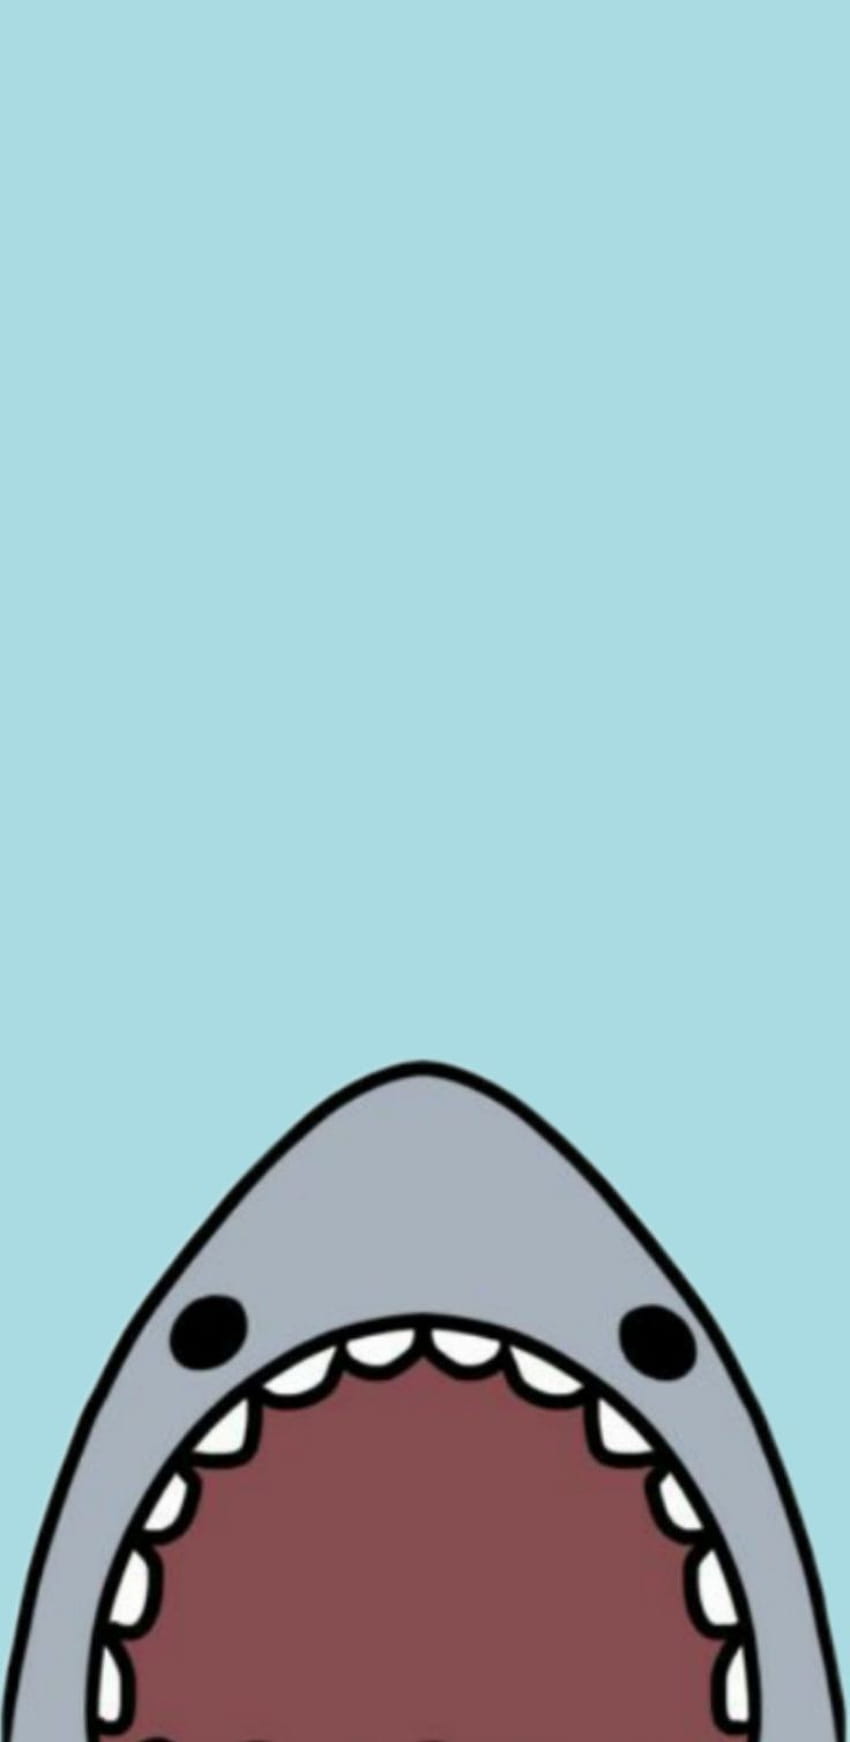 Shark backgrounds: Bạn thích cá mập đúng không? Hãy trang trí màn hình điện thoại của mình với những hình nền cá mập sặc sỡ và sống động. Từ tương phản màu sắc đến hình ảnh đầy mê hoặc, chúng tôi có tất cả những gì bạn cần!